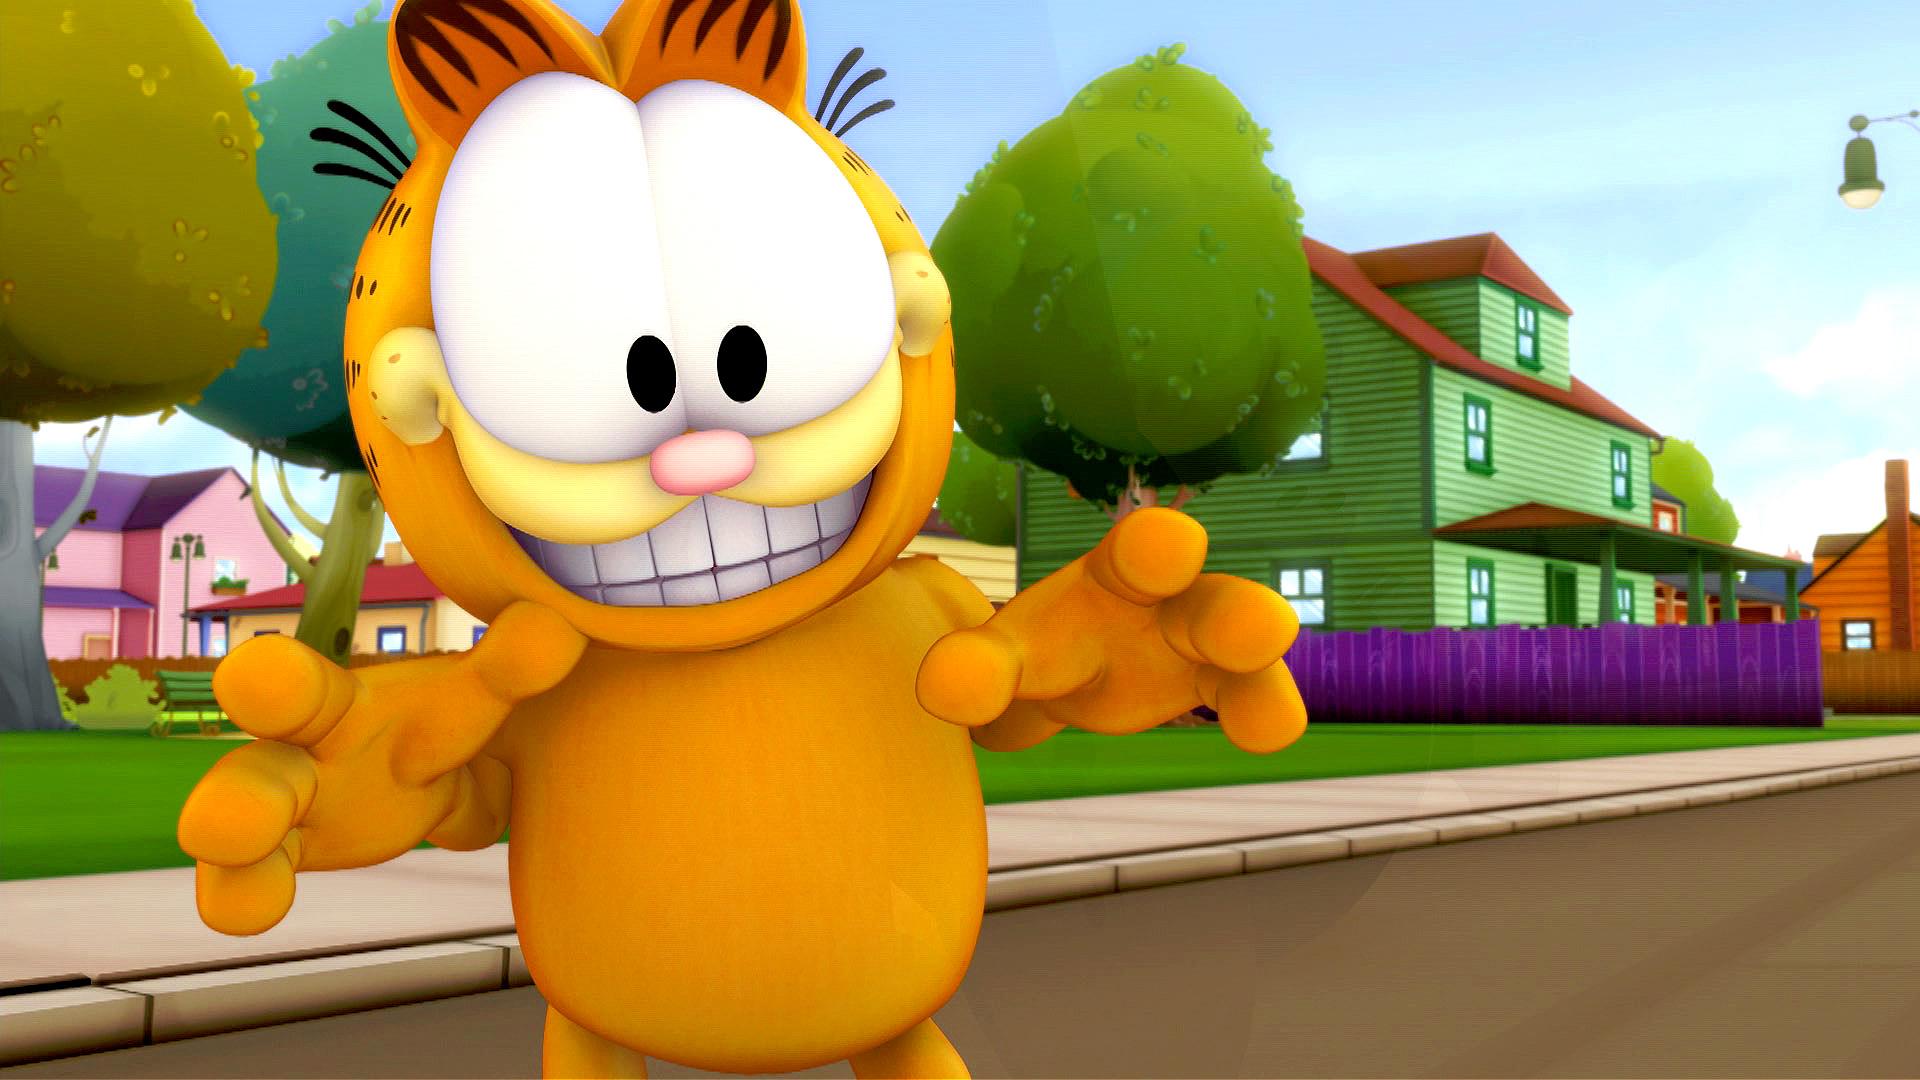 El Show de Garfield